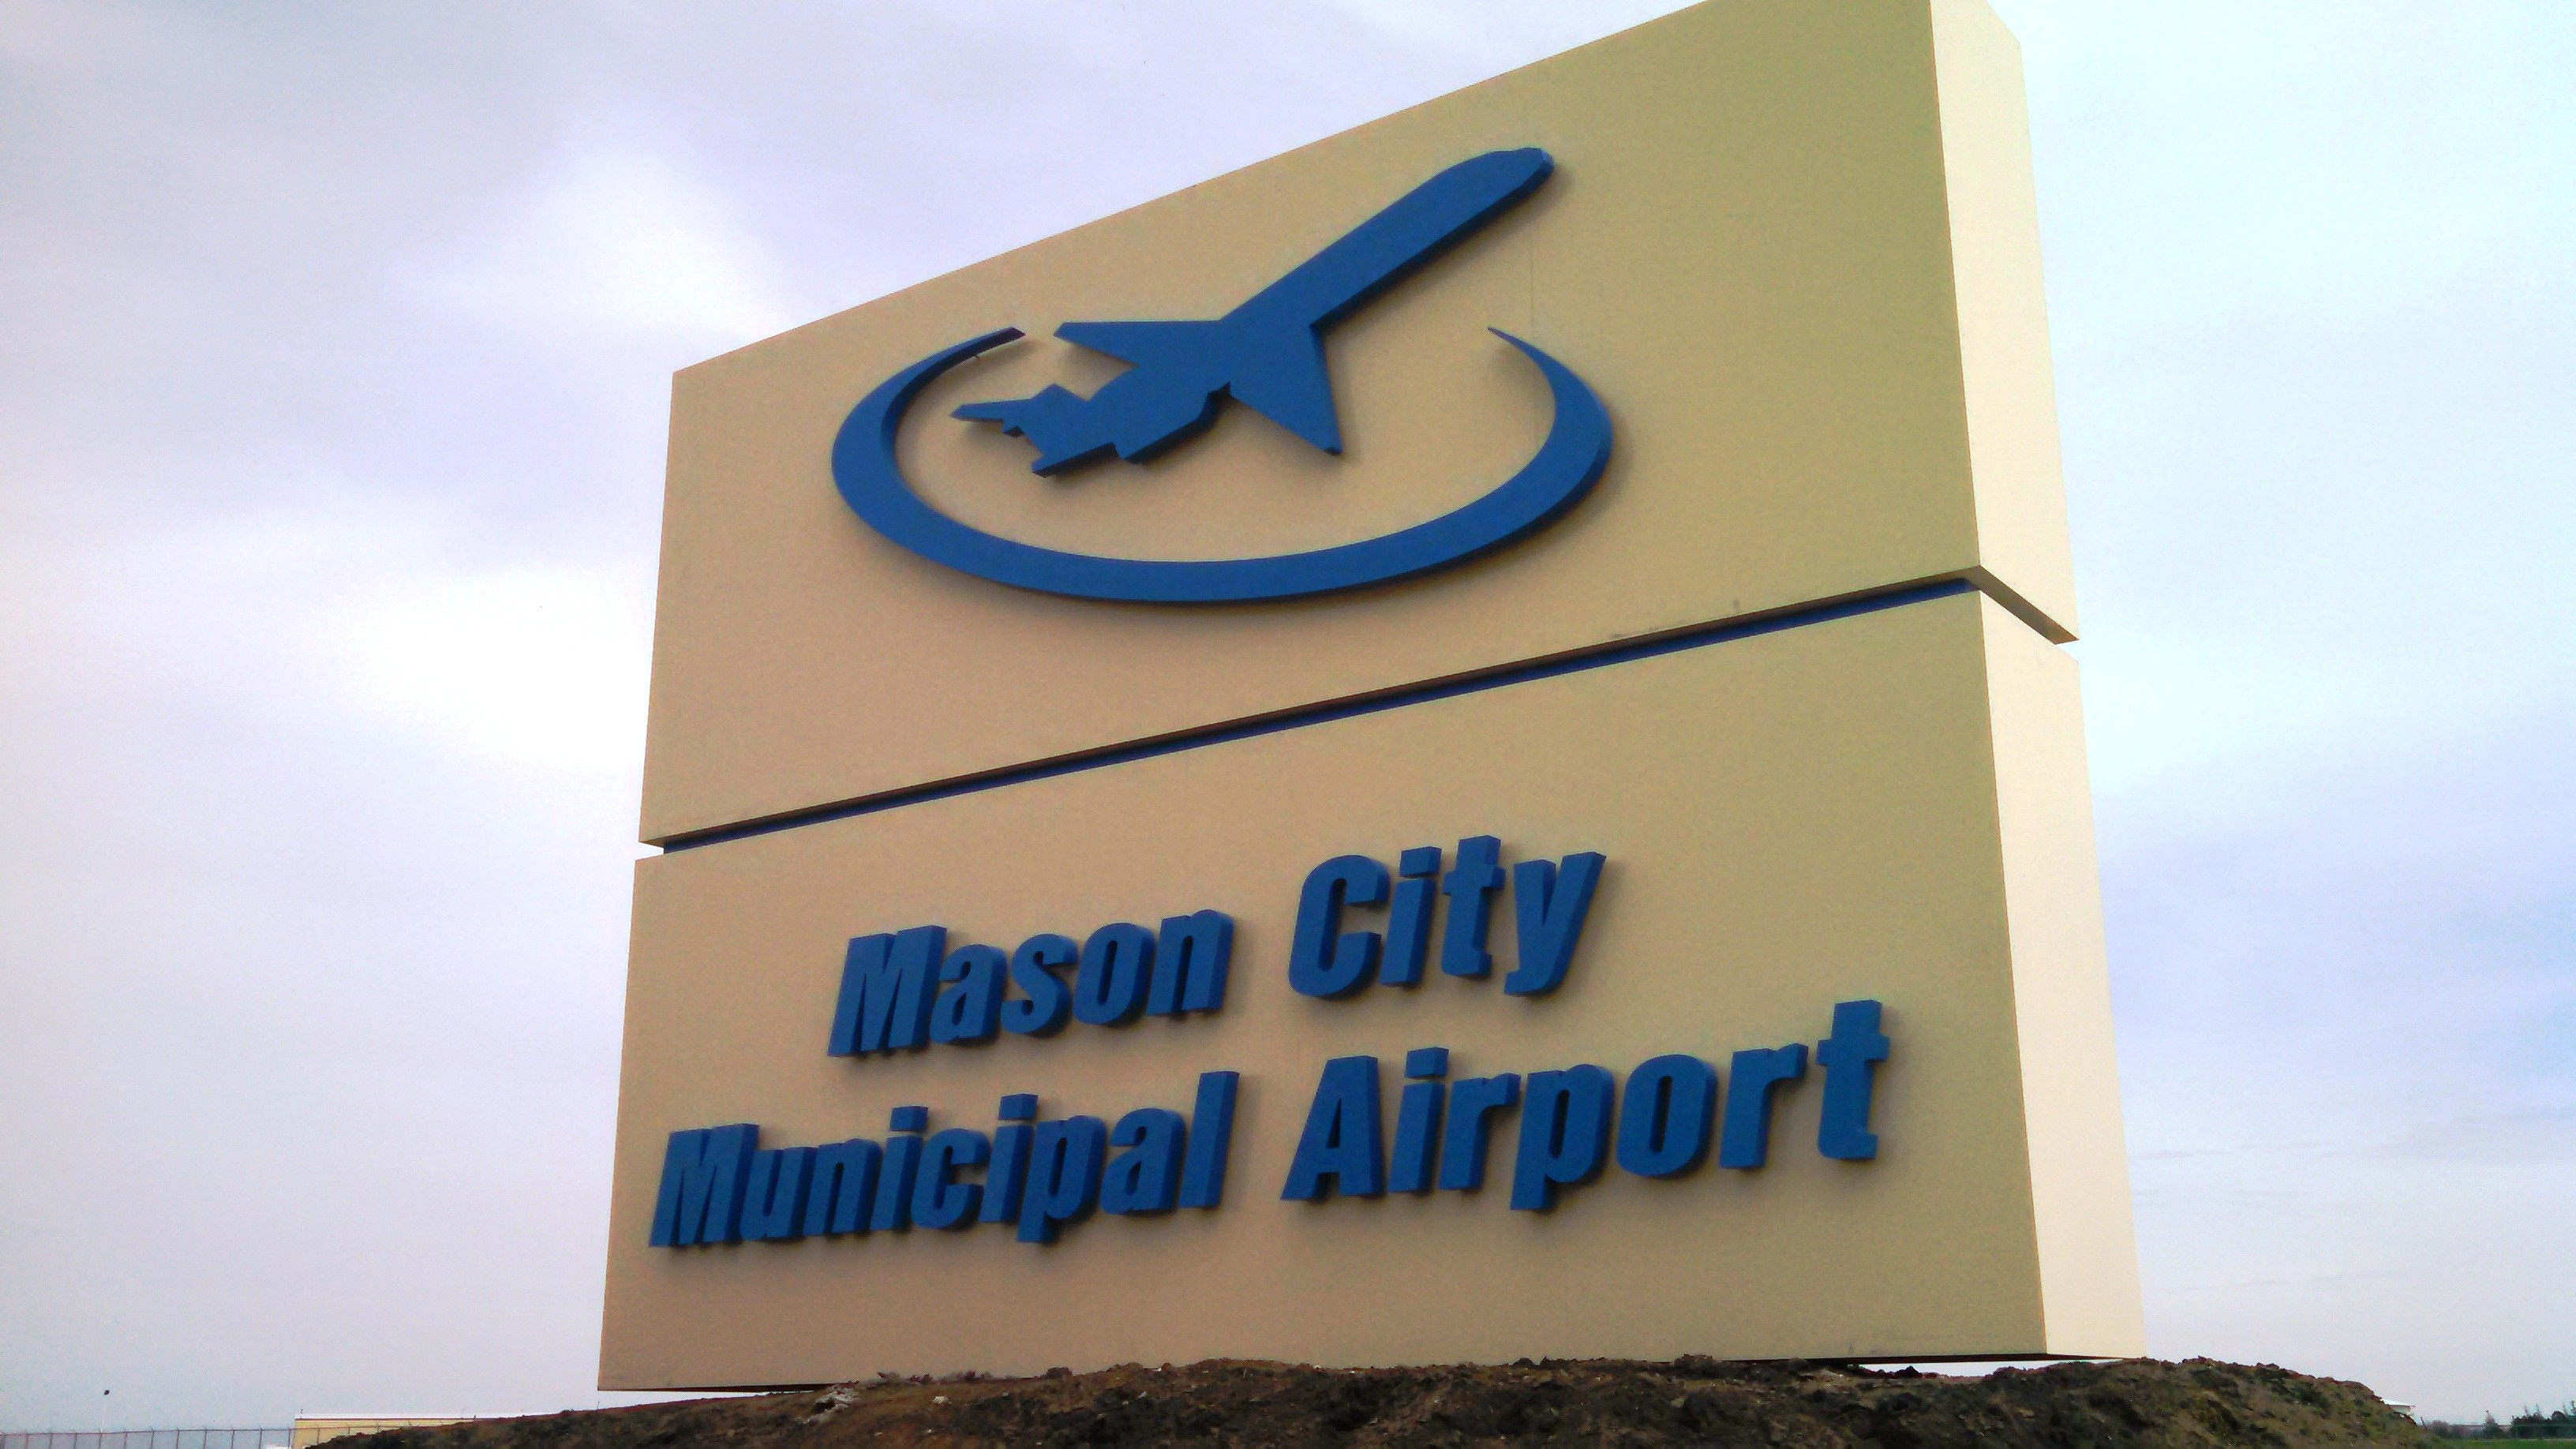 city of mason city - mason city municipal airport